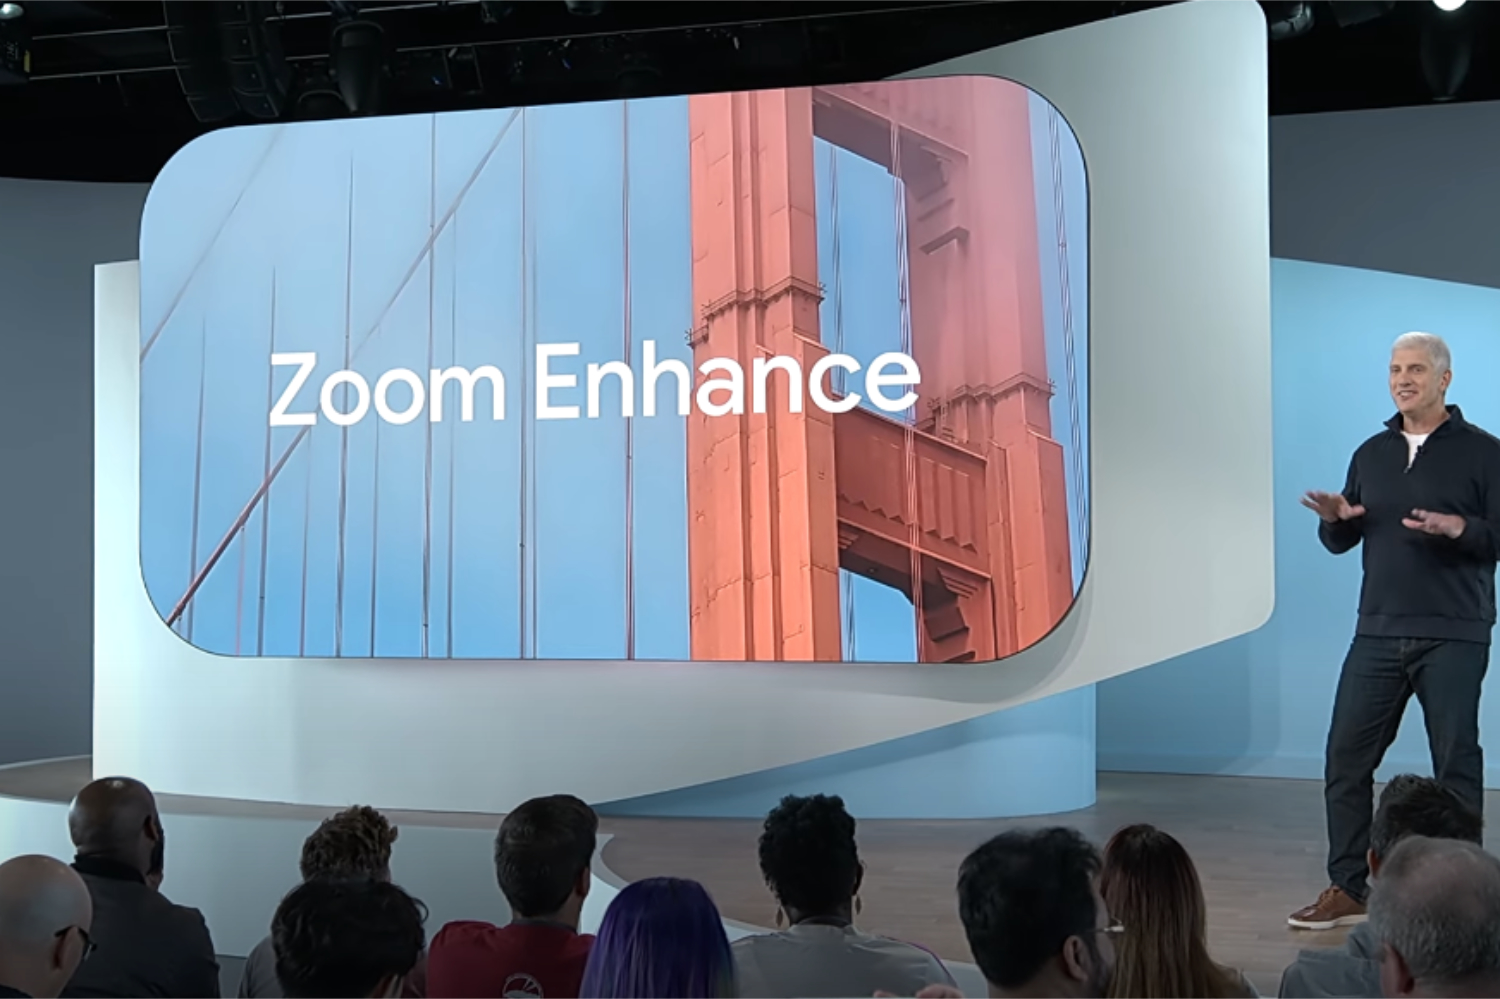 Demonstration der neuen Zoom Enhance-Funktion von Google.